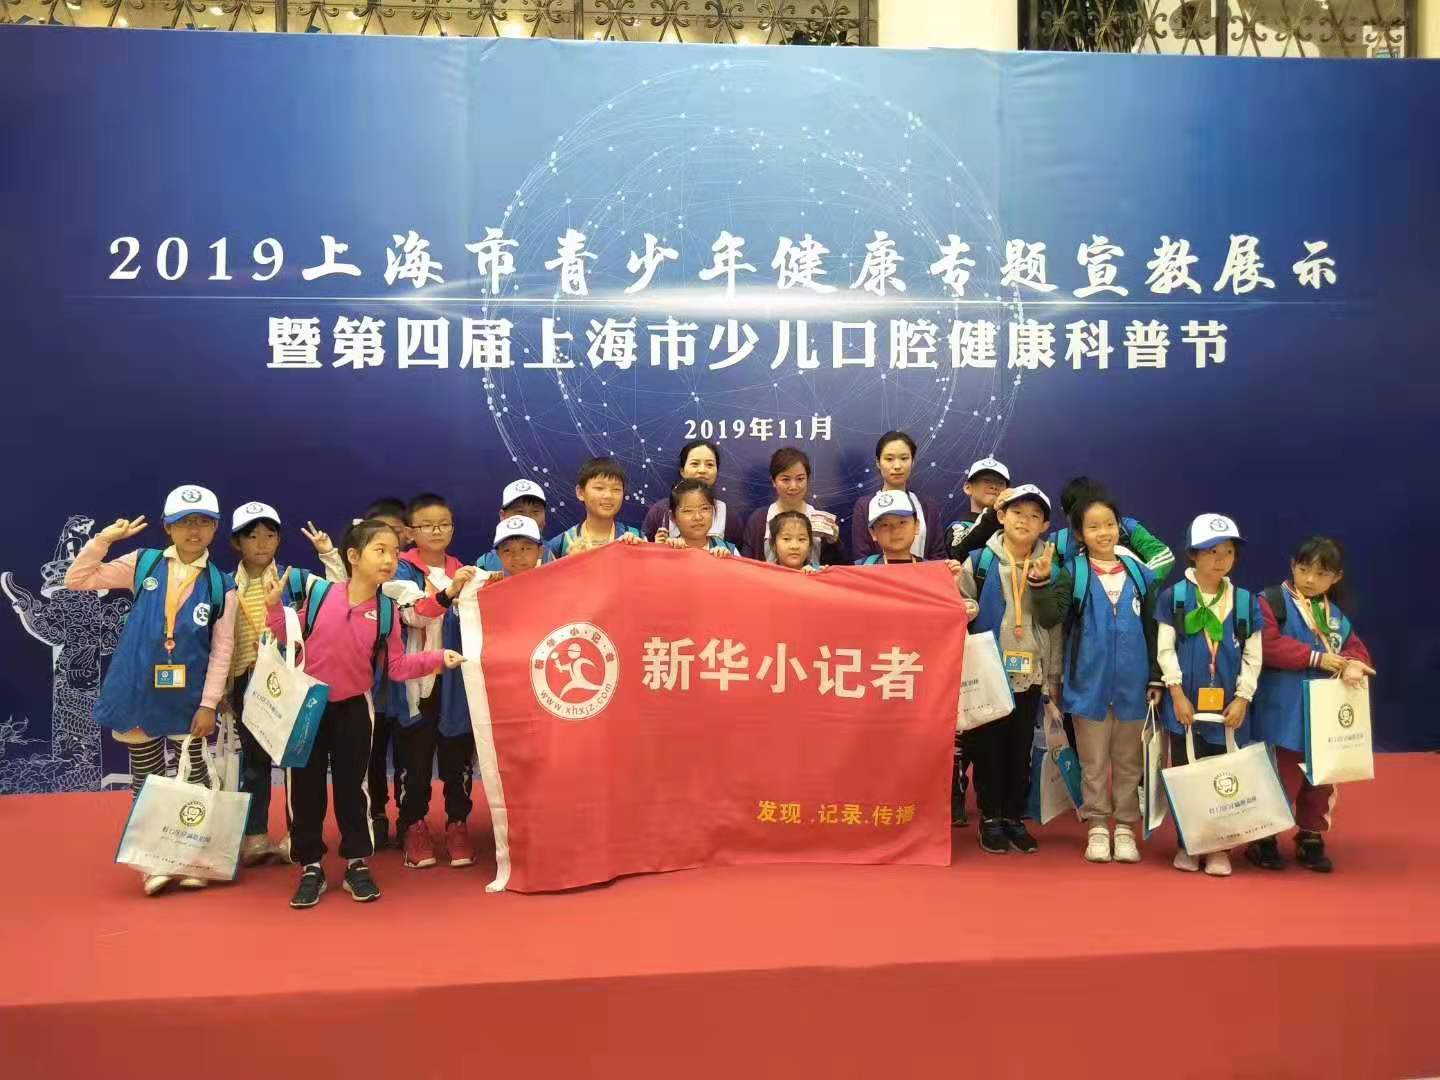 新华小记者参加上海市青少年健康专题宣教成果展示 暨上海市第四届少儿口腔健康科普节